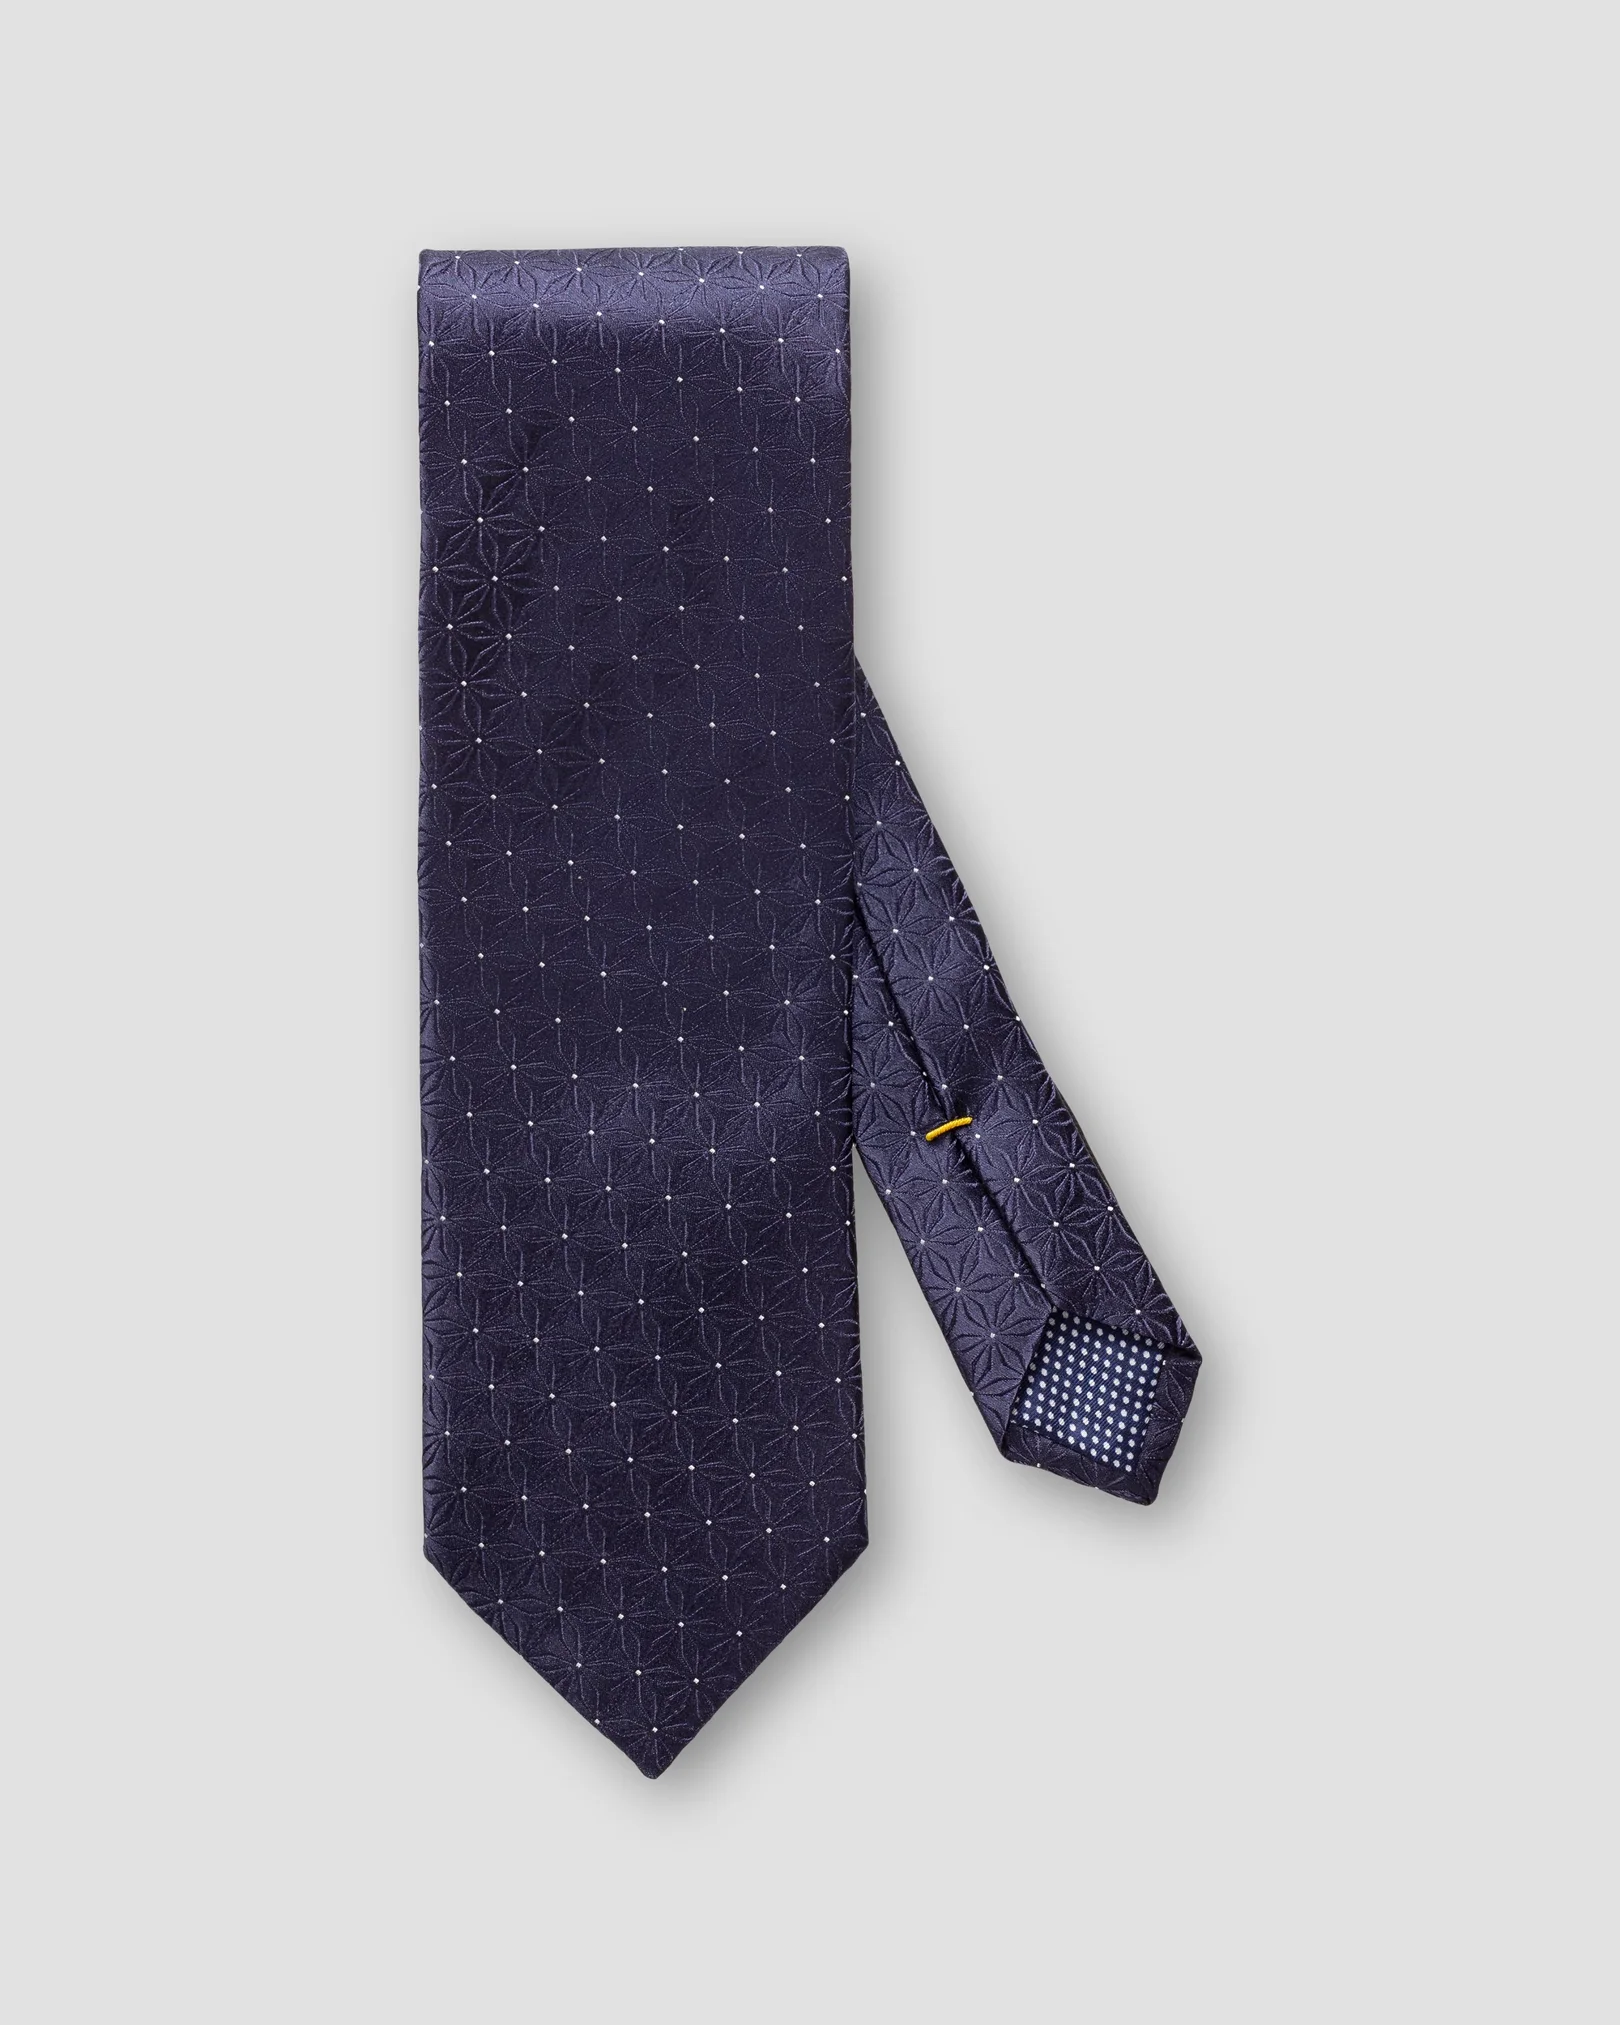 Eton - midnight blue floral silk tie